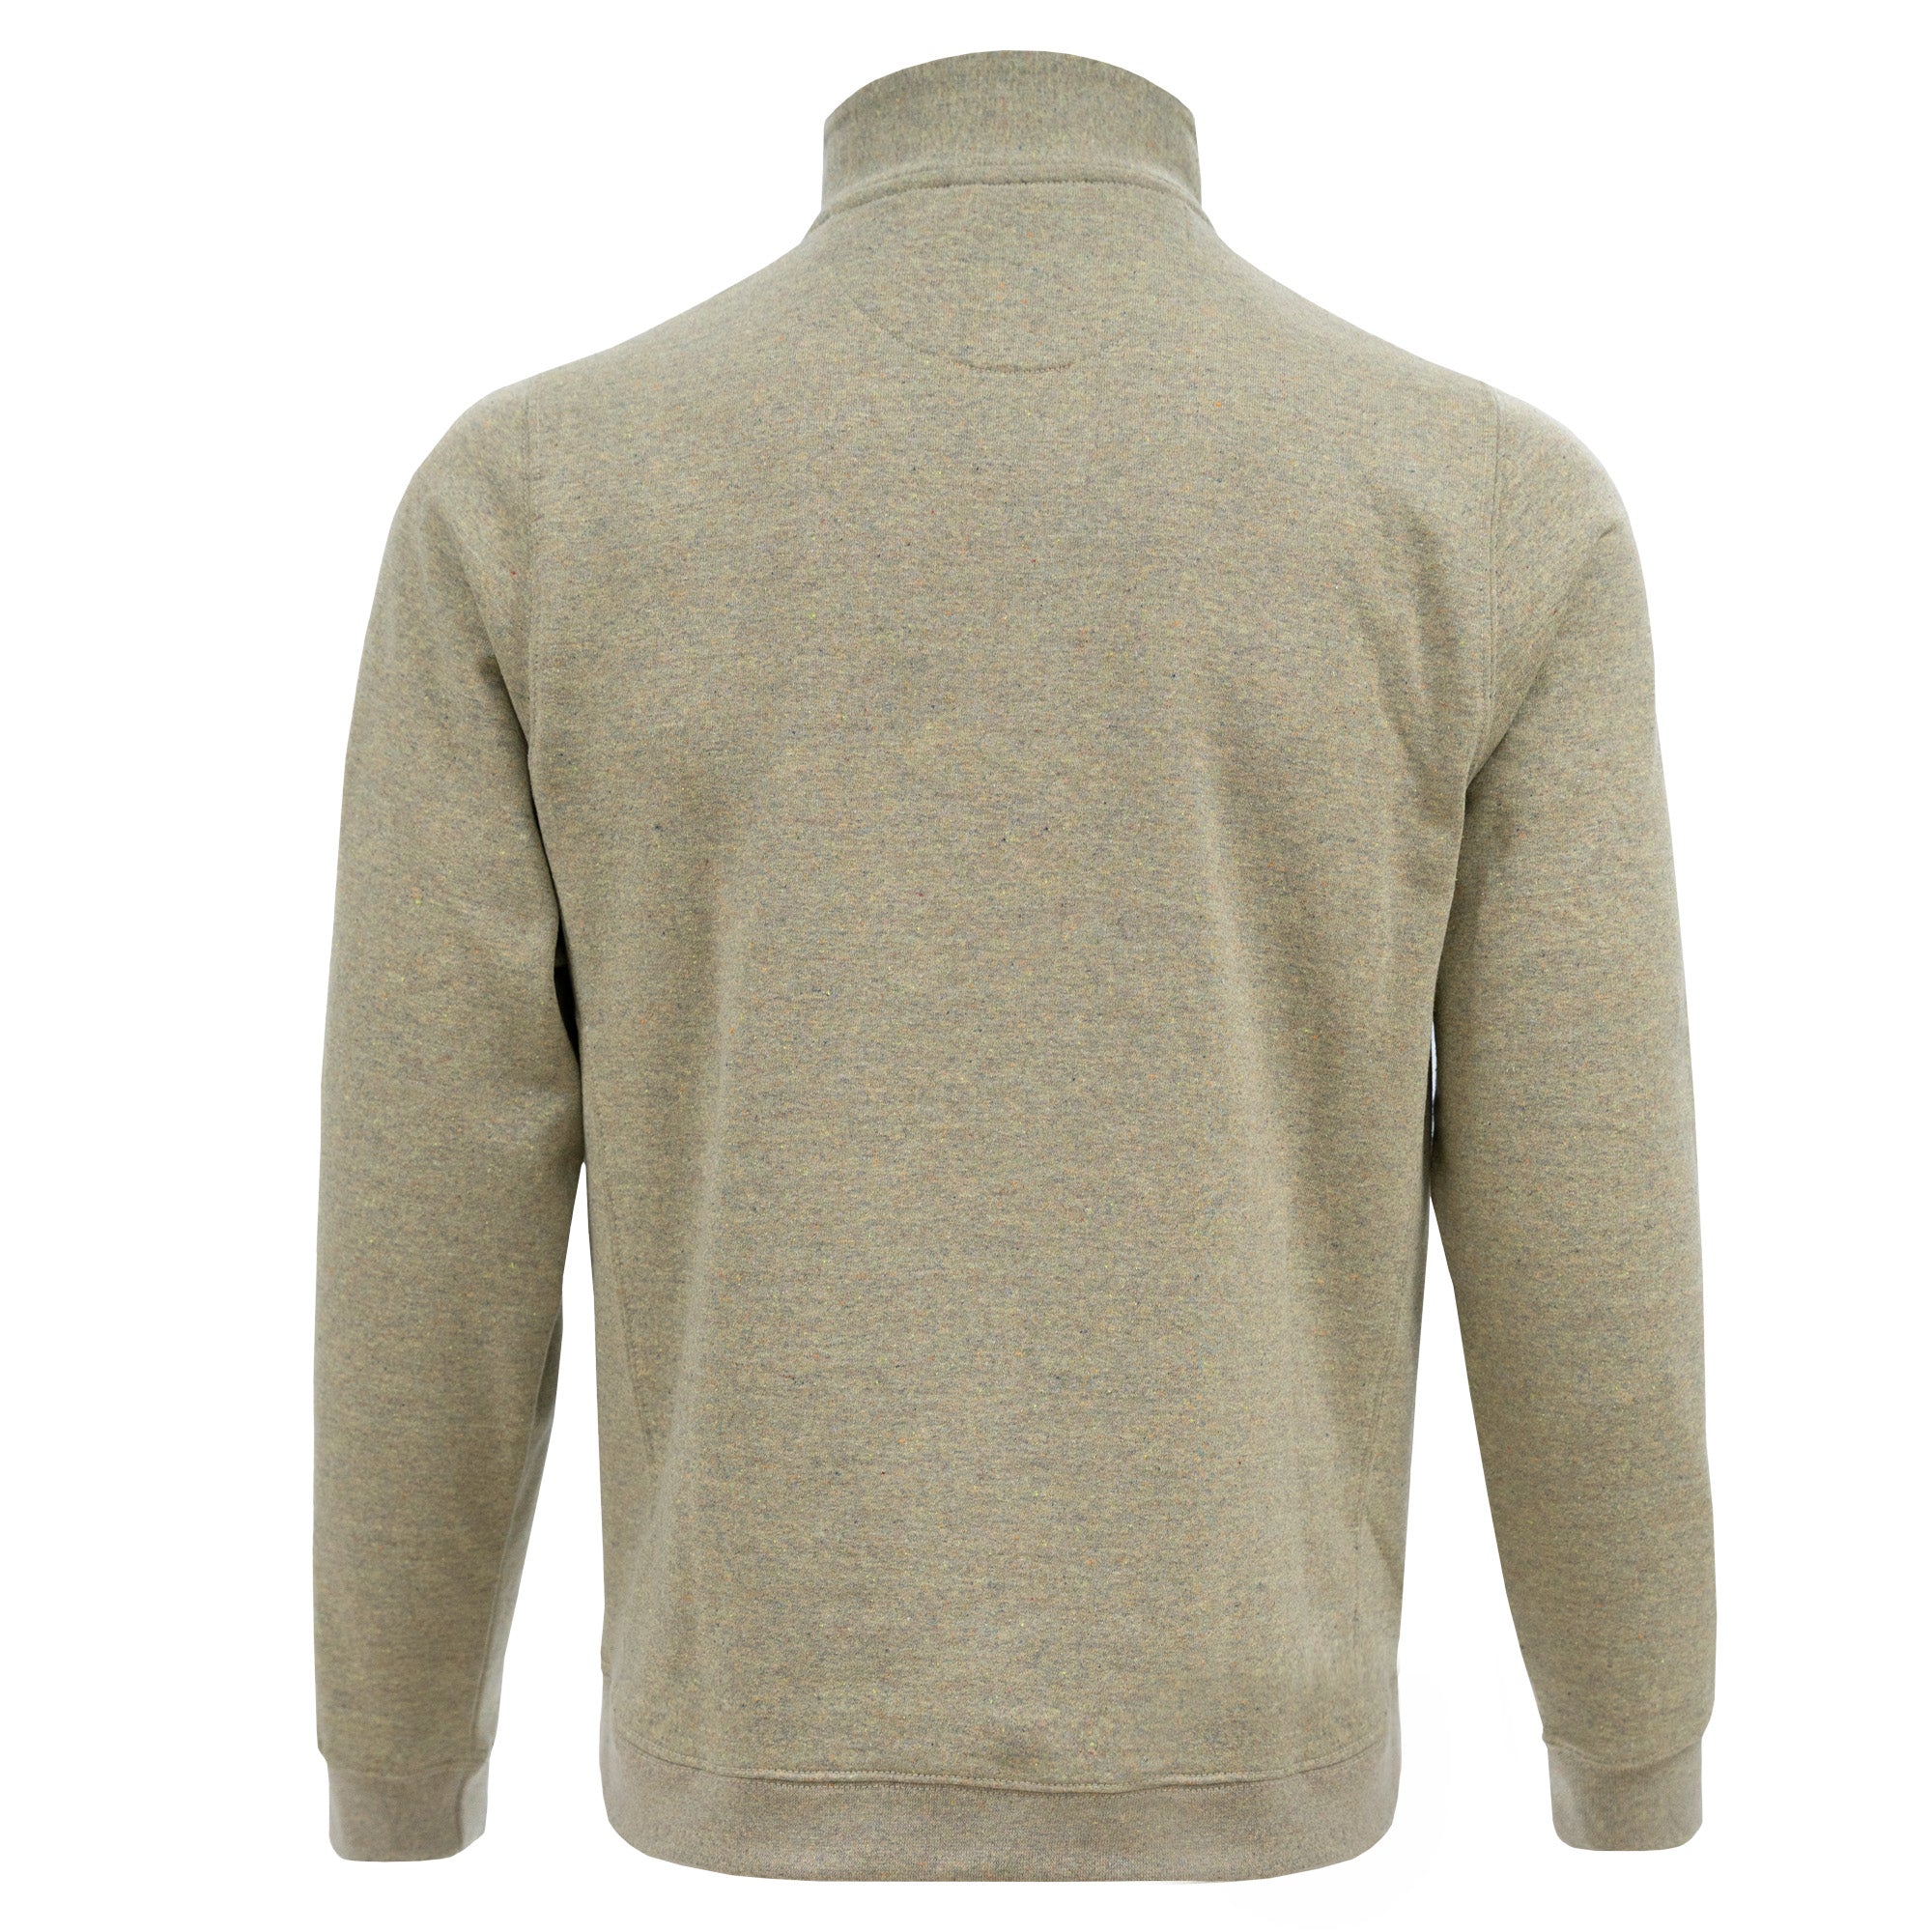 RC1096 - Unisex Quarter-Zip Fleece Sweatshirt